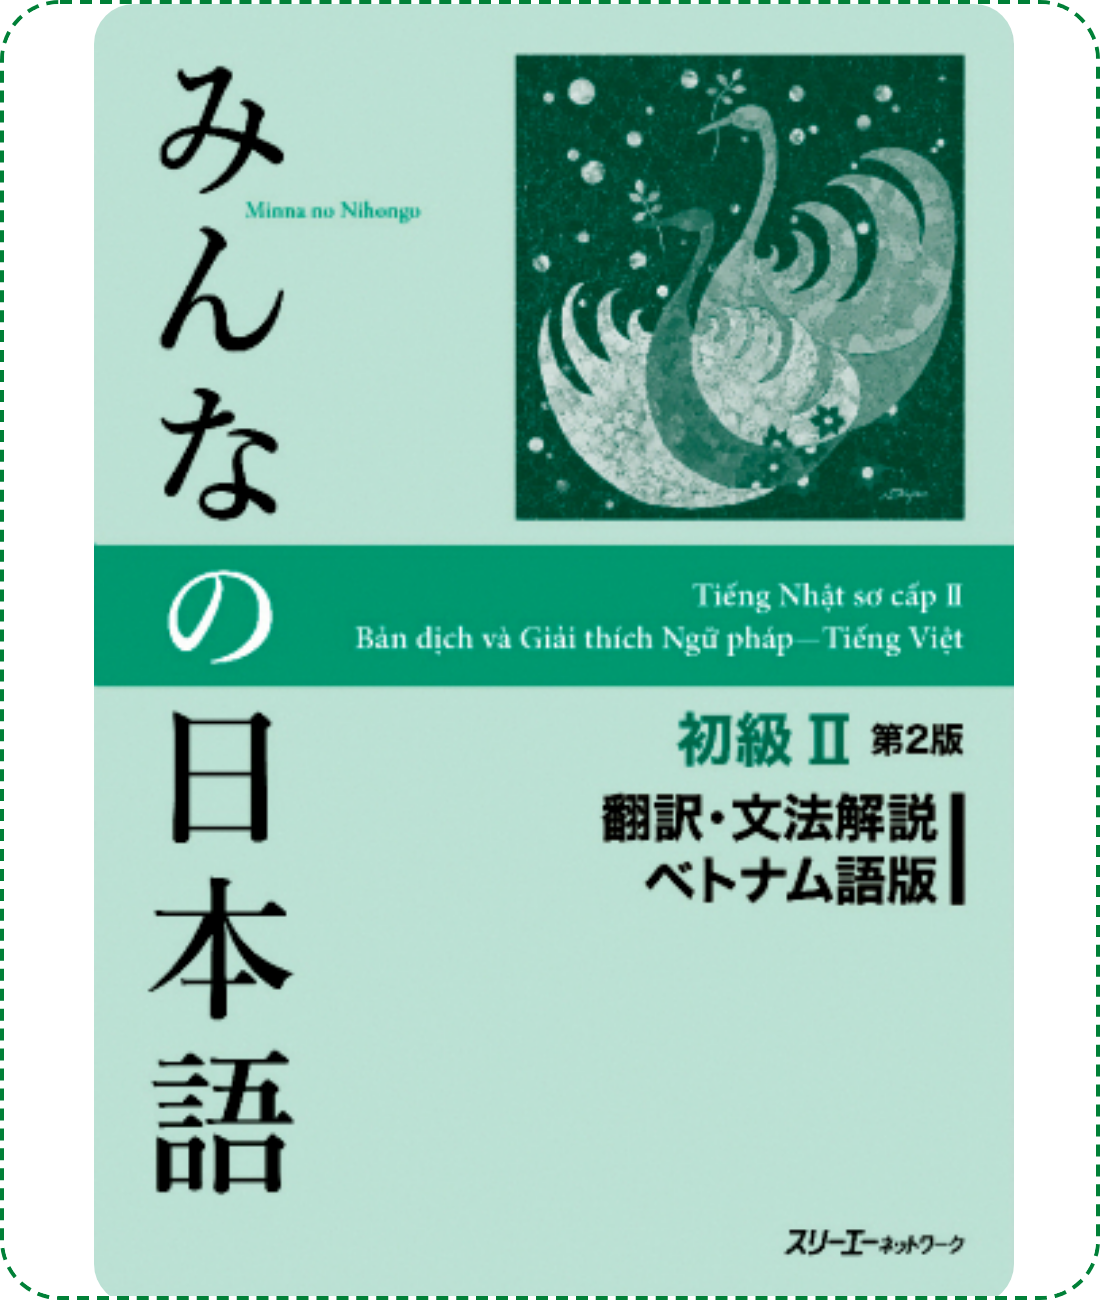 Giáo trình Minano Nihongo 2 - Bản dịch và giải thích ngữ pháp